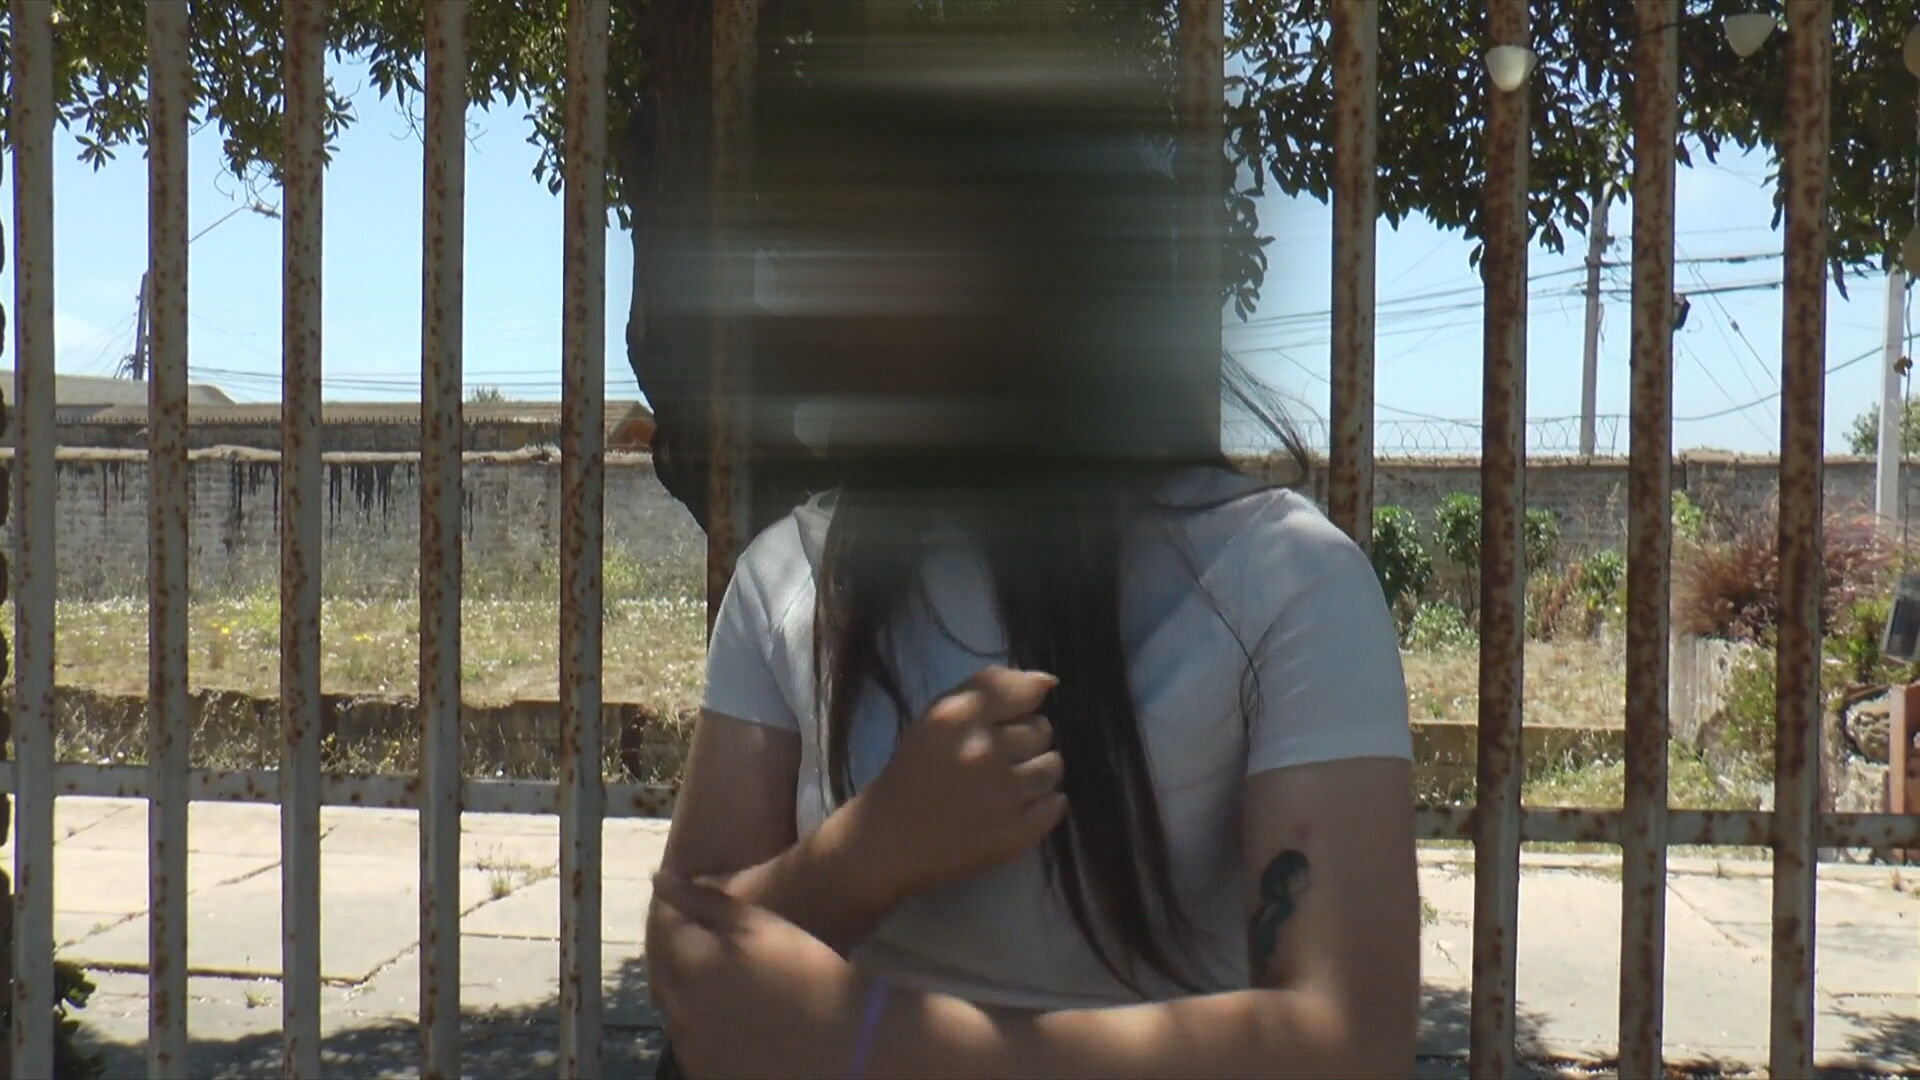 mujer linchada en san antonio: el video que muestra uno de los secuestros que se le acusa